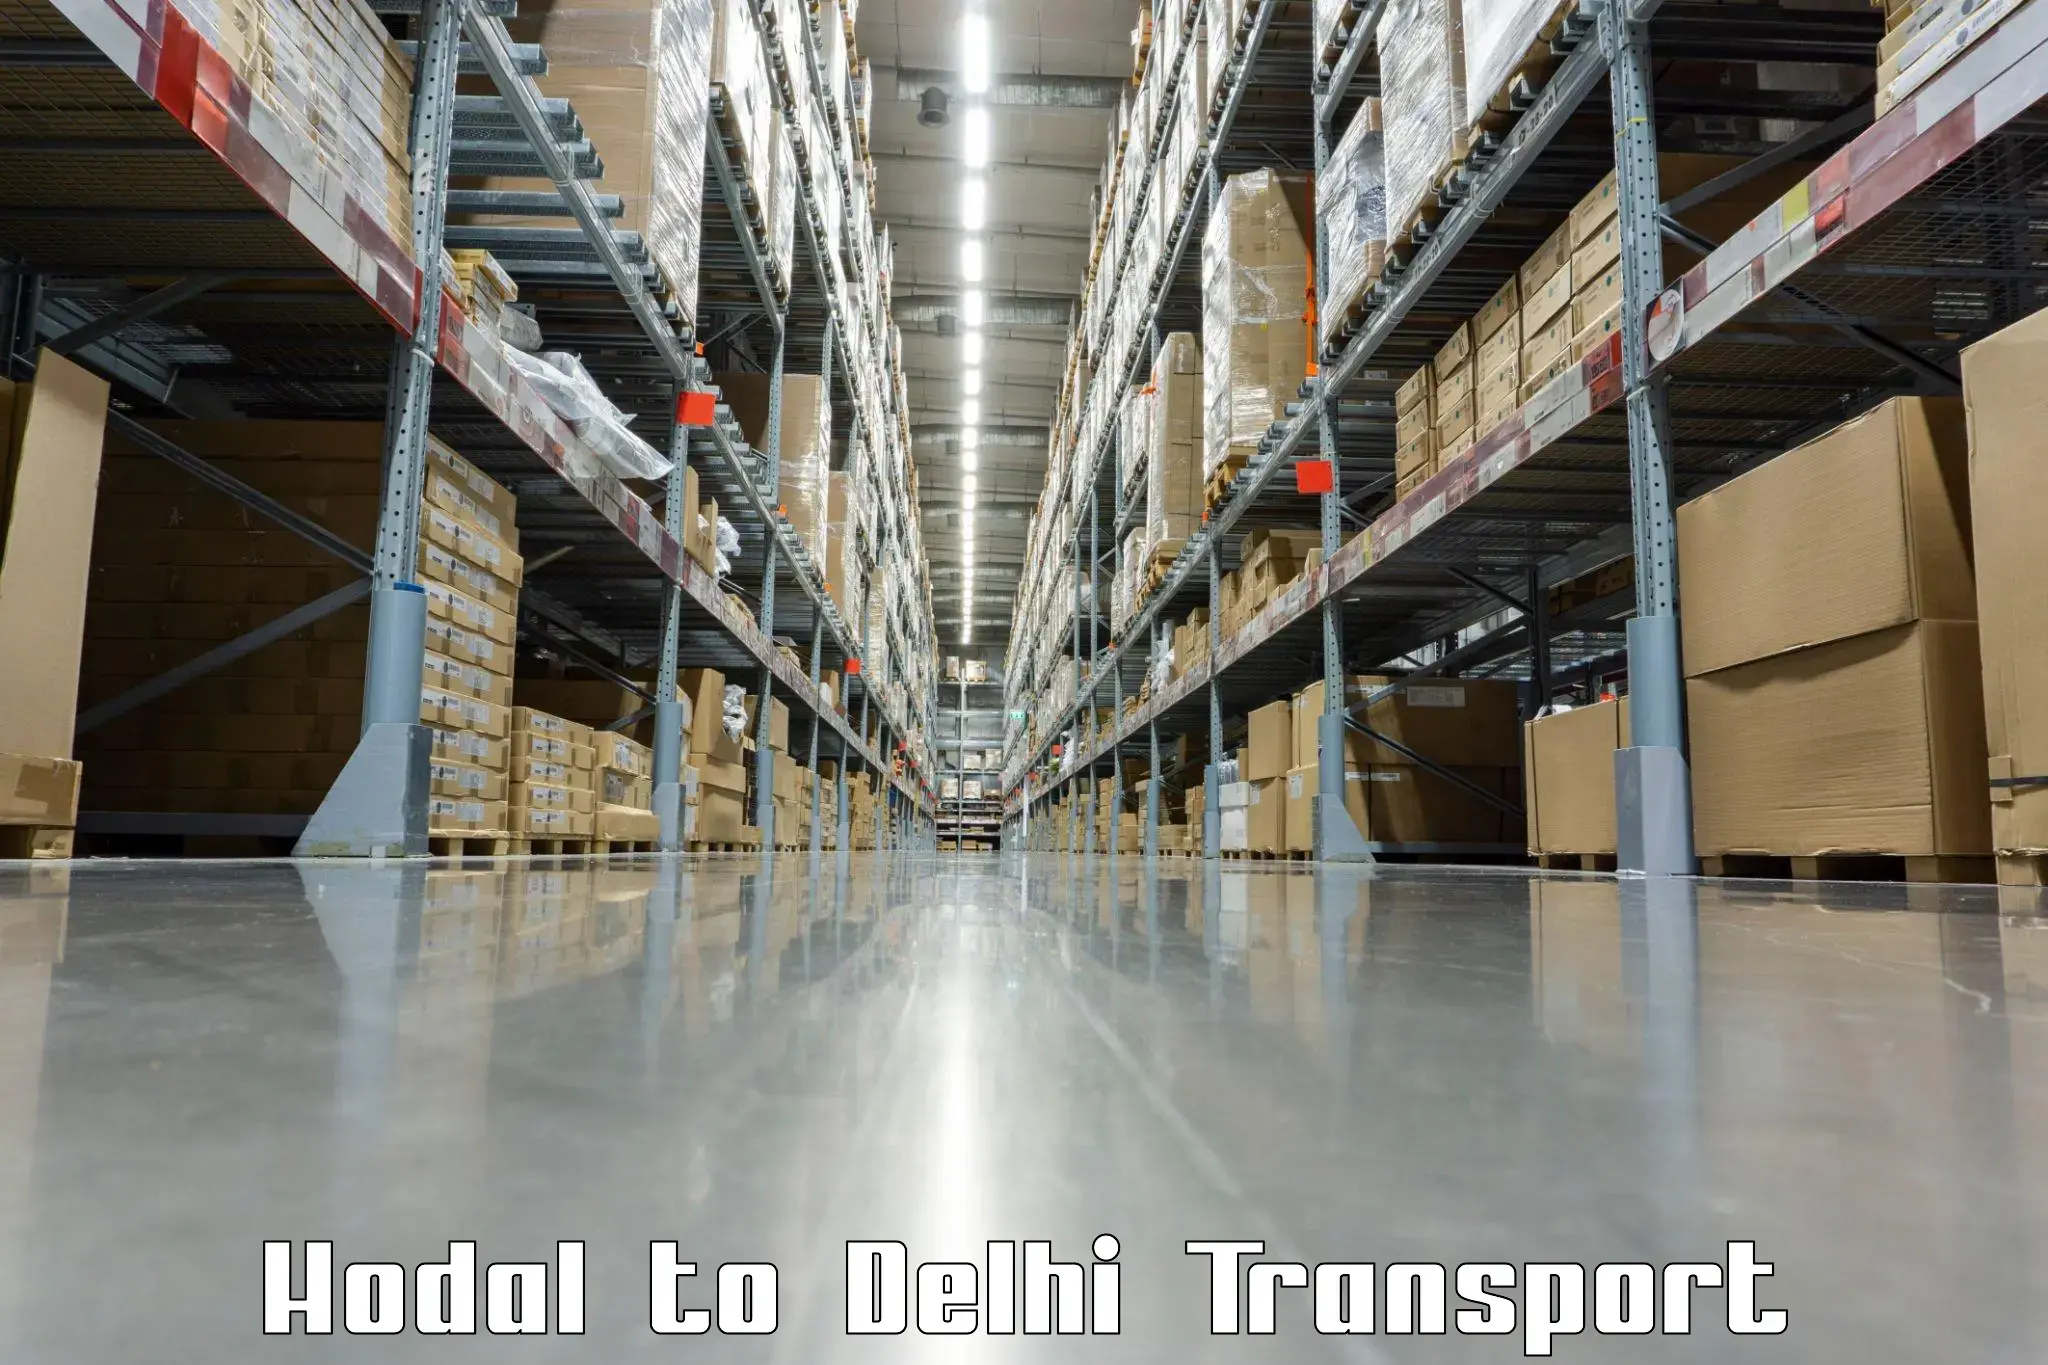 Intercity transport Hodal to Jamia Millia Islamia New Delhi